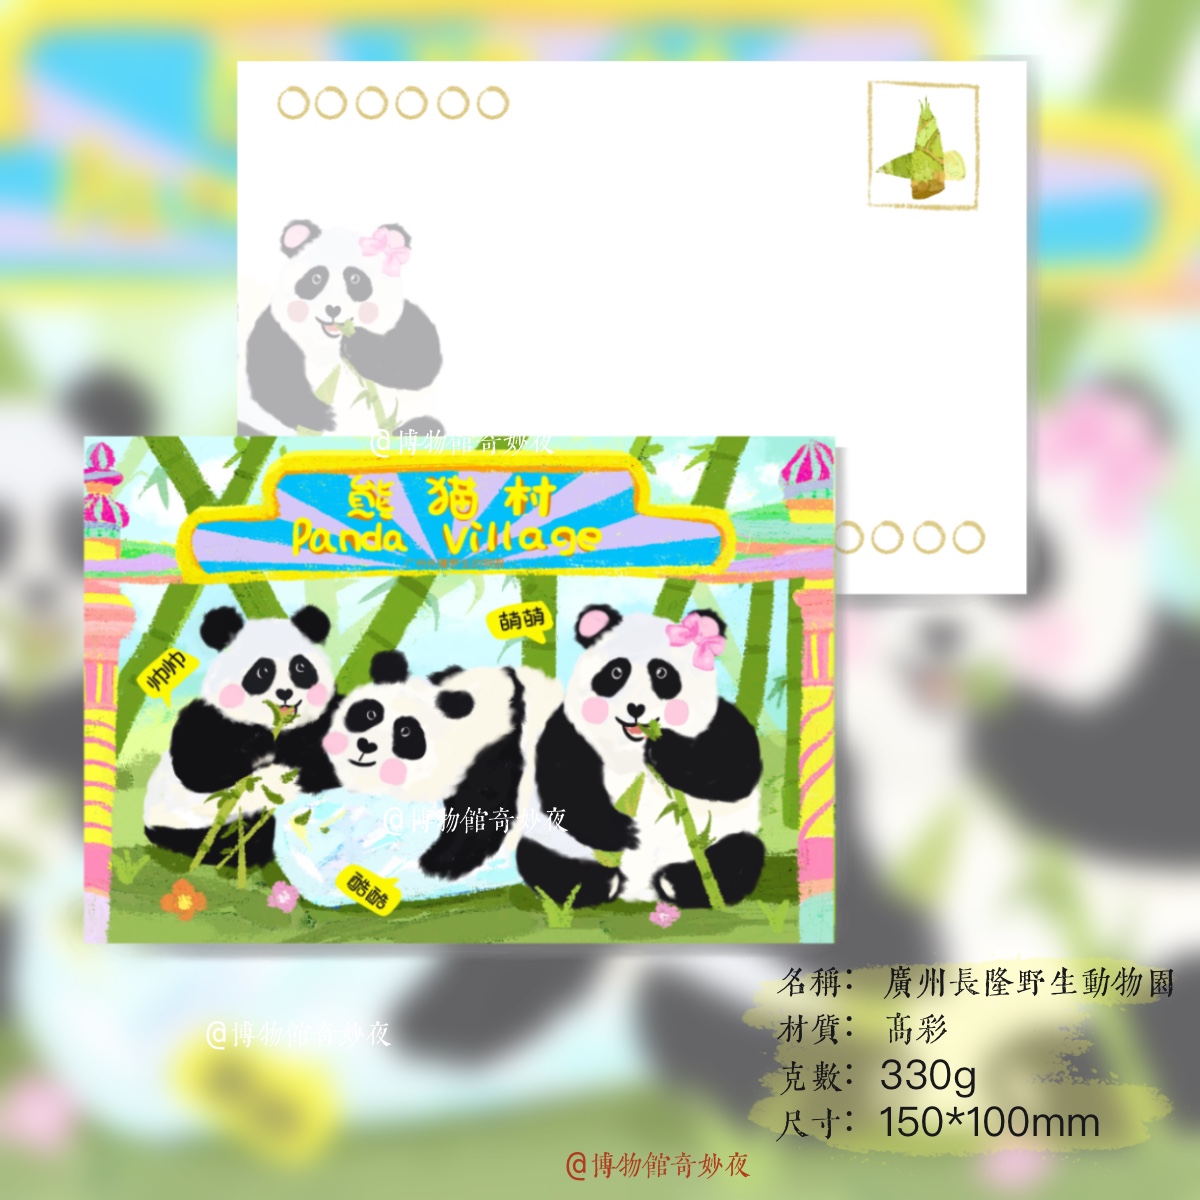 【动物系列】广州长隆野生动物园 熊猫三胞胎 手绘明信片卡片